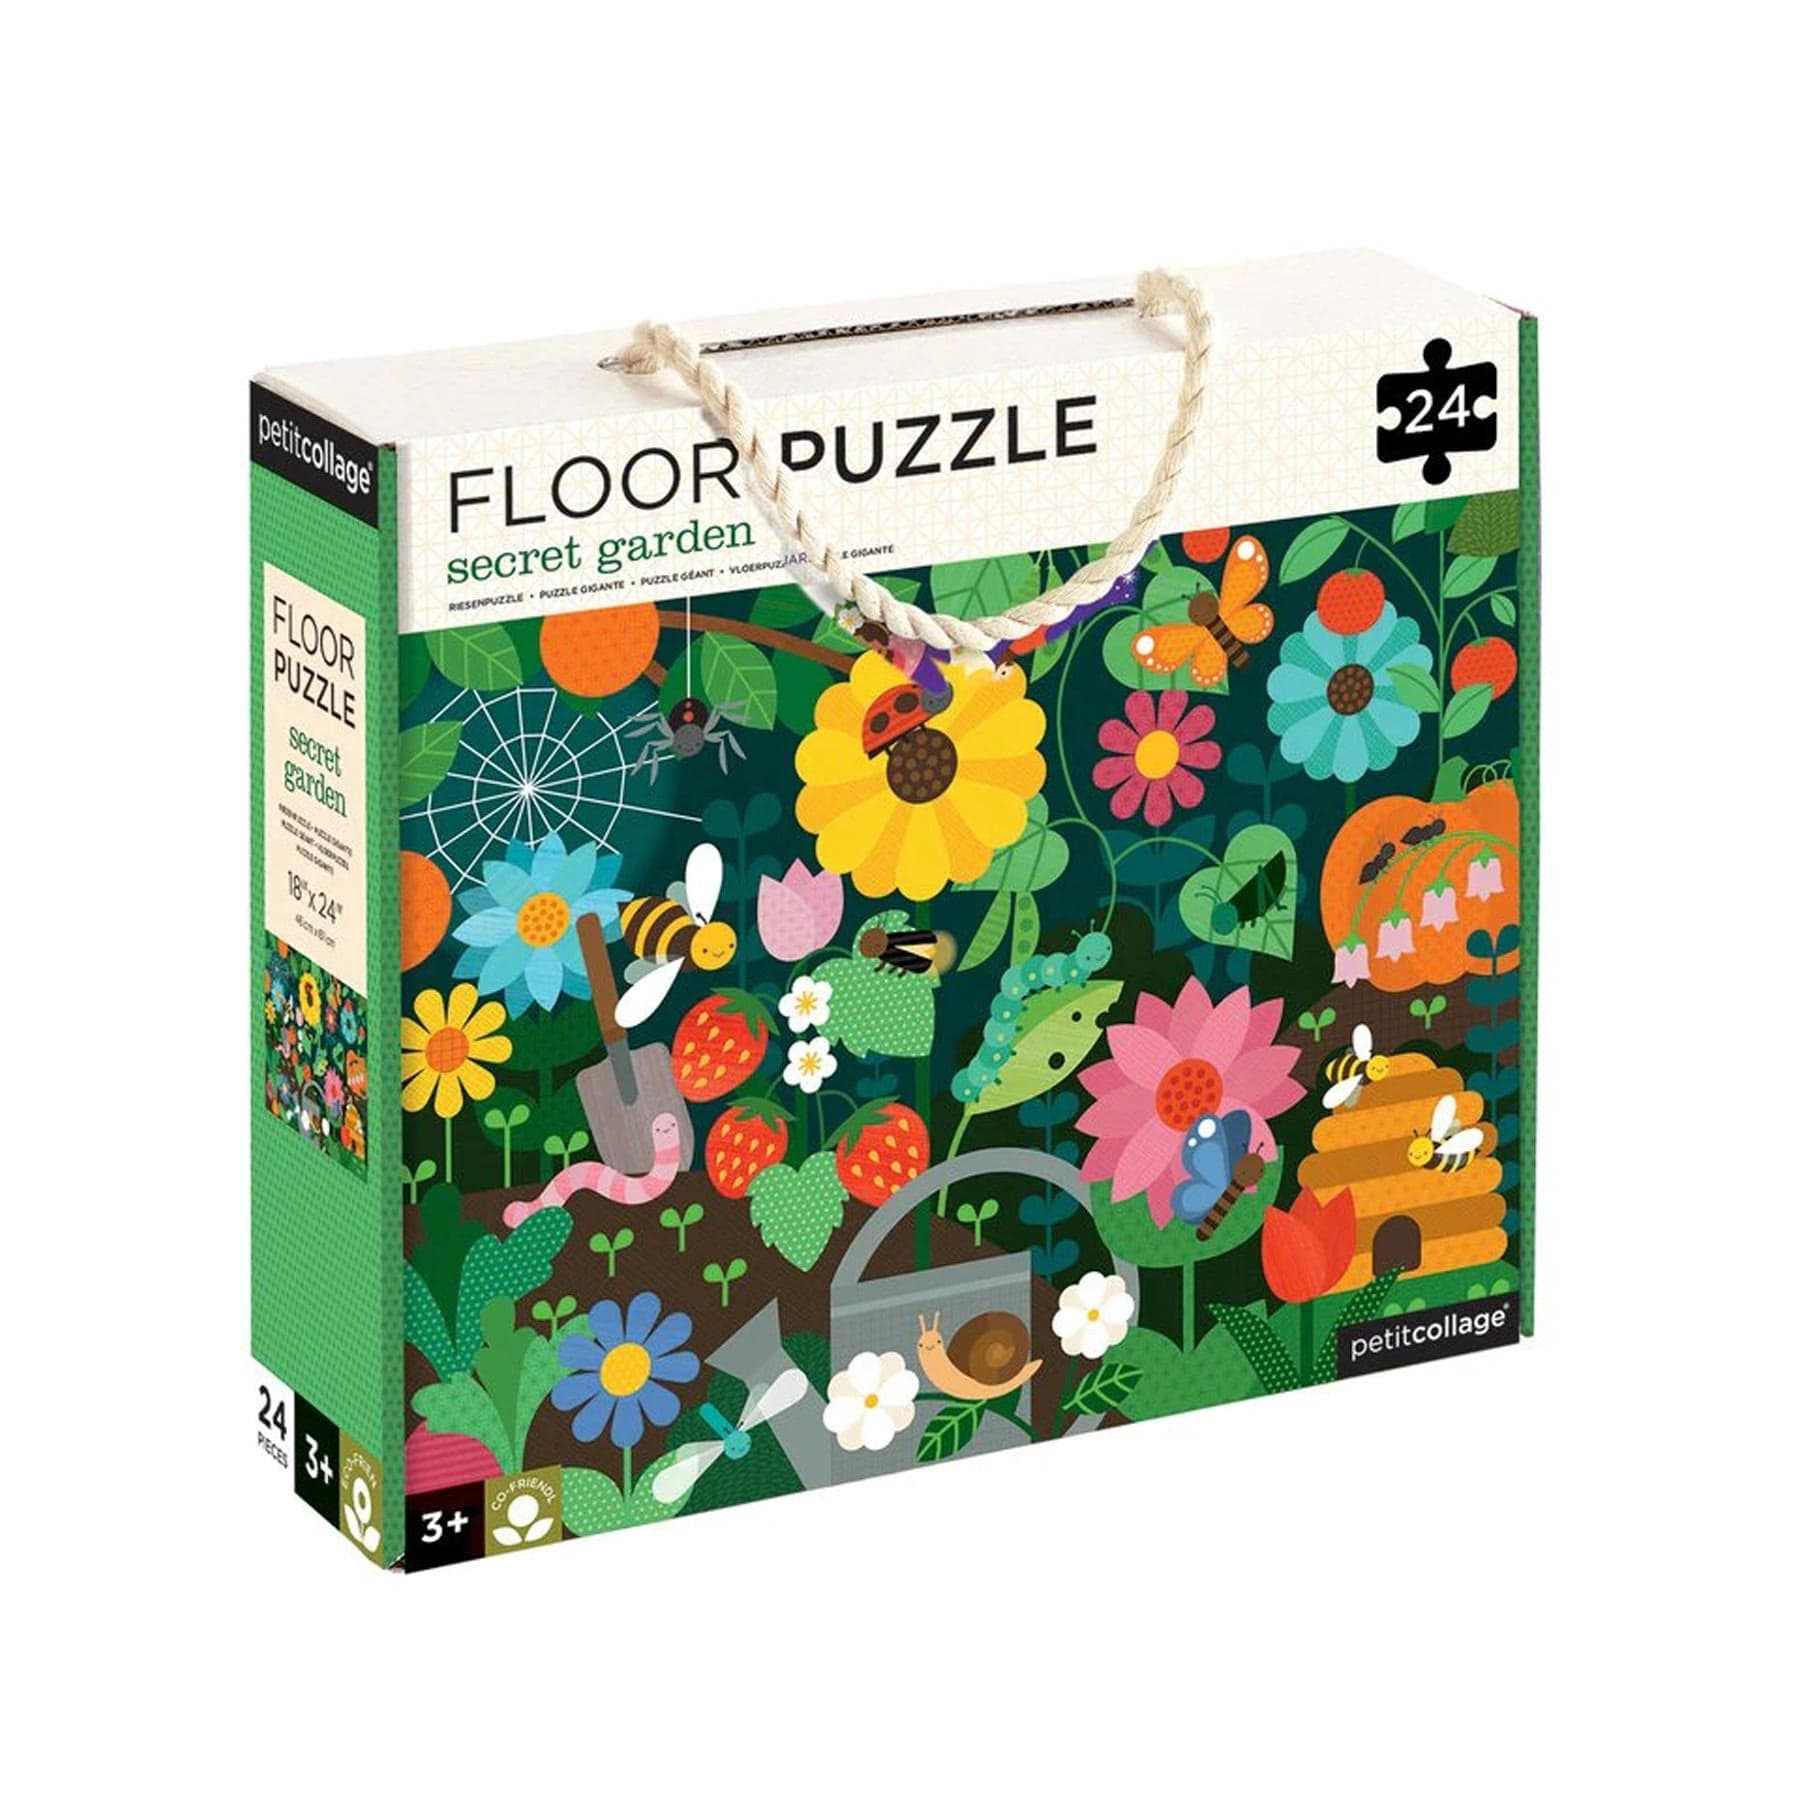 Secret garden 24-piece floor puzzle